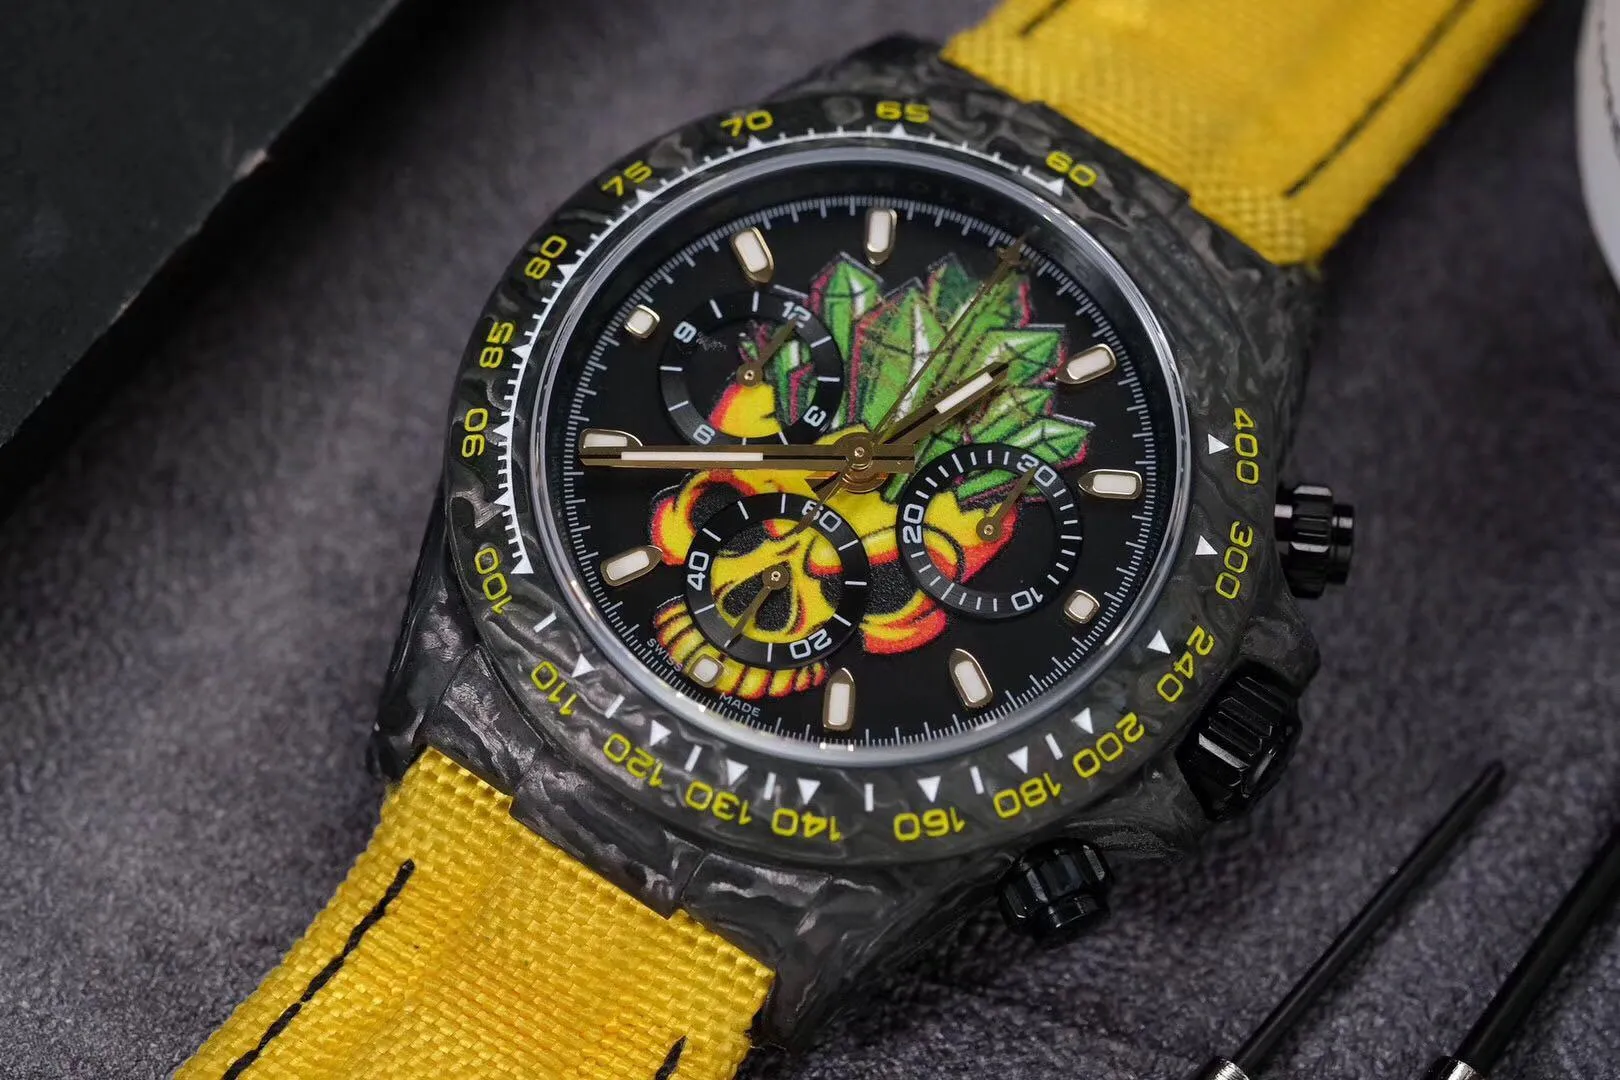 Montre pour hommes WWF montre de luxe fonction chronographe boîtier en fibre de carbone bracelet en caoutchouc 7750 mouvement mécanique automatique